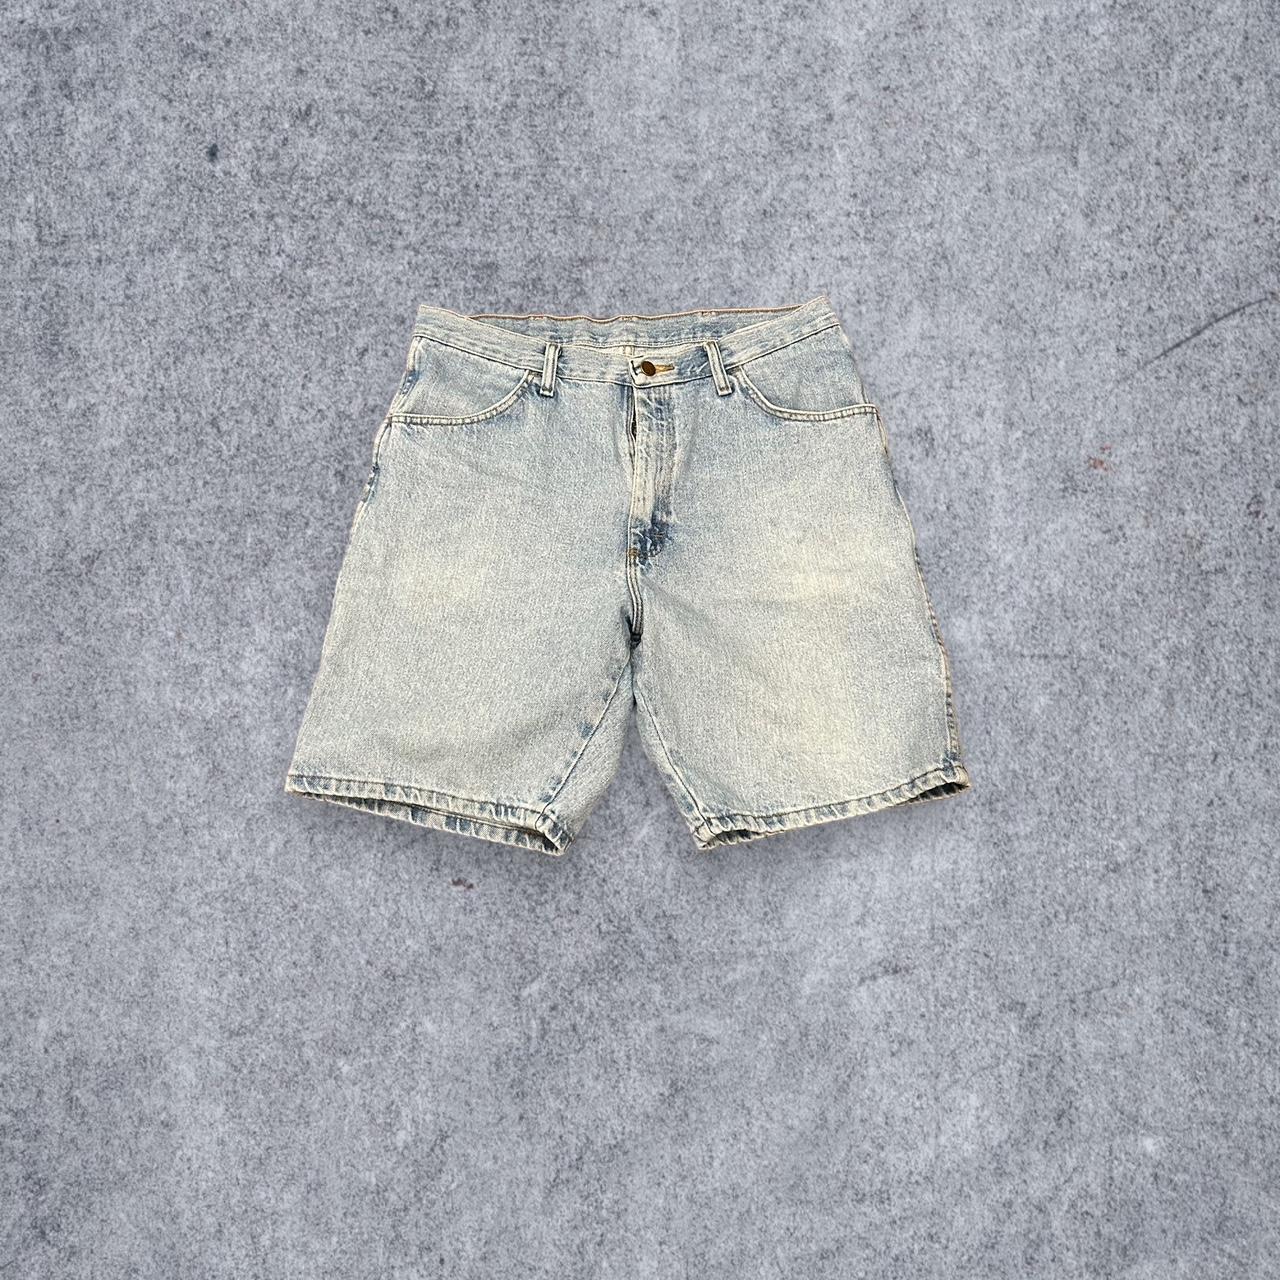 Vintage Denim Jean Shorts Waist: 33” Inseam: 9” Leg... - Depop